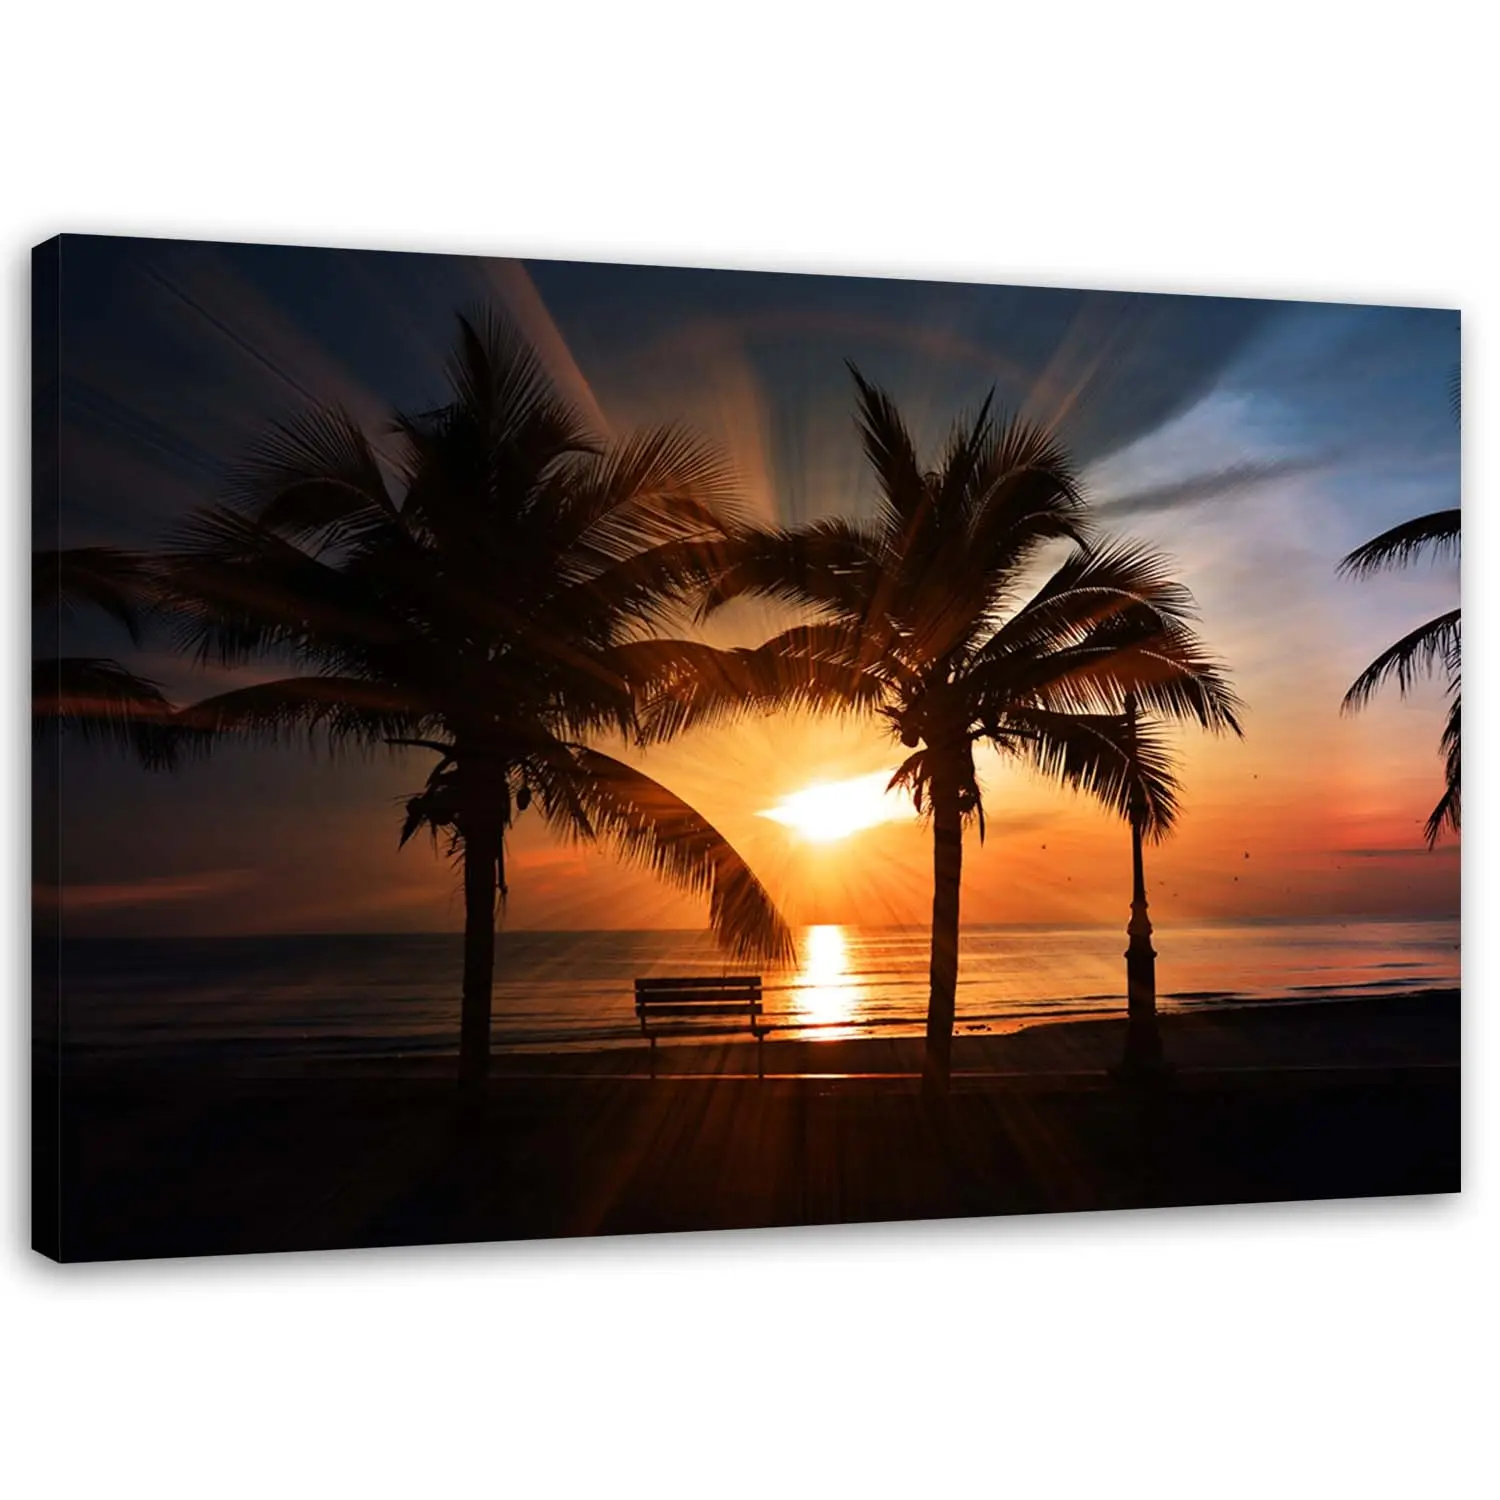 Meer Strand Palmen Sonnenuntergang Bild